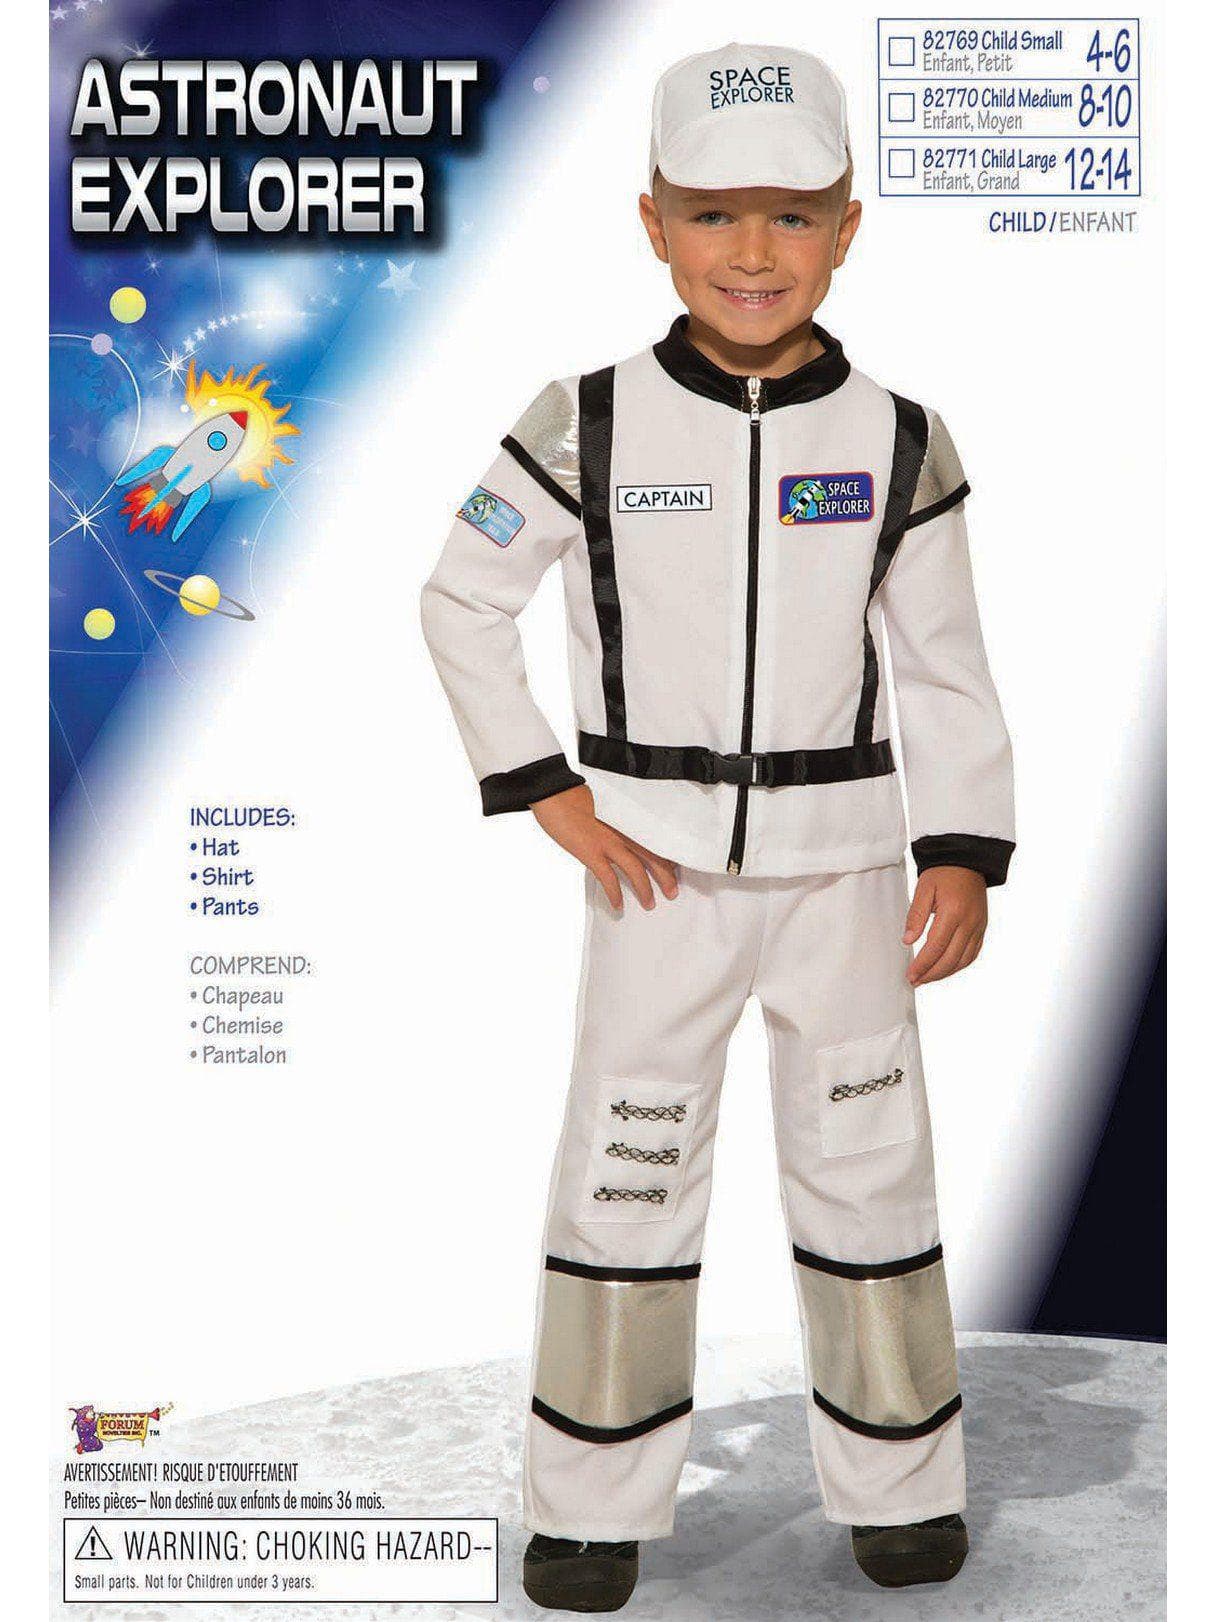 Kid's Astronaut Explorer Costume - costumes.com